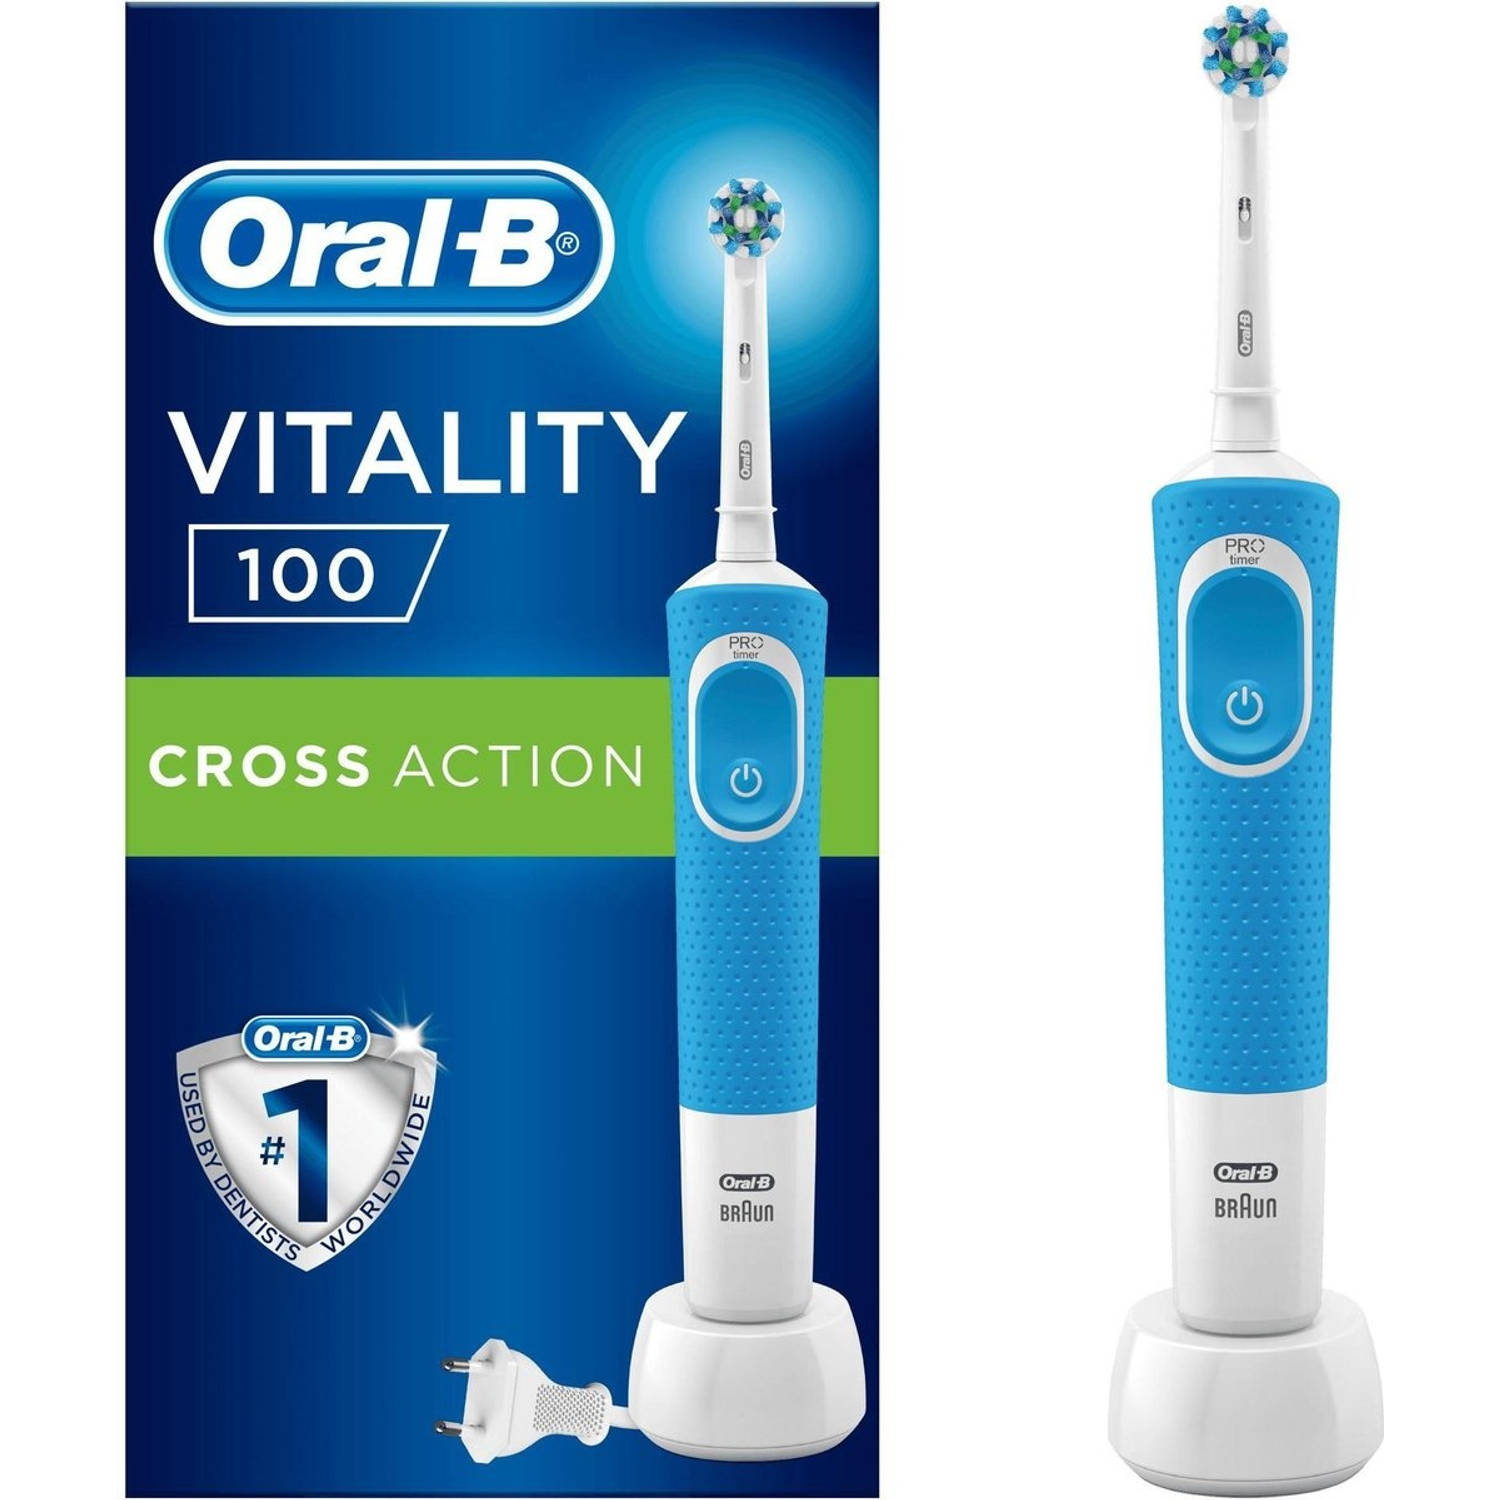 Oral-B Vitality 100 CrossAction - Elektrische Tandenborstel Powered By Braun - Blauw